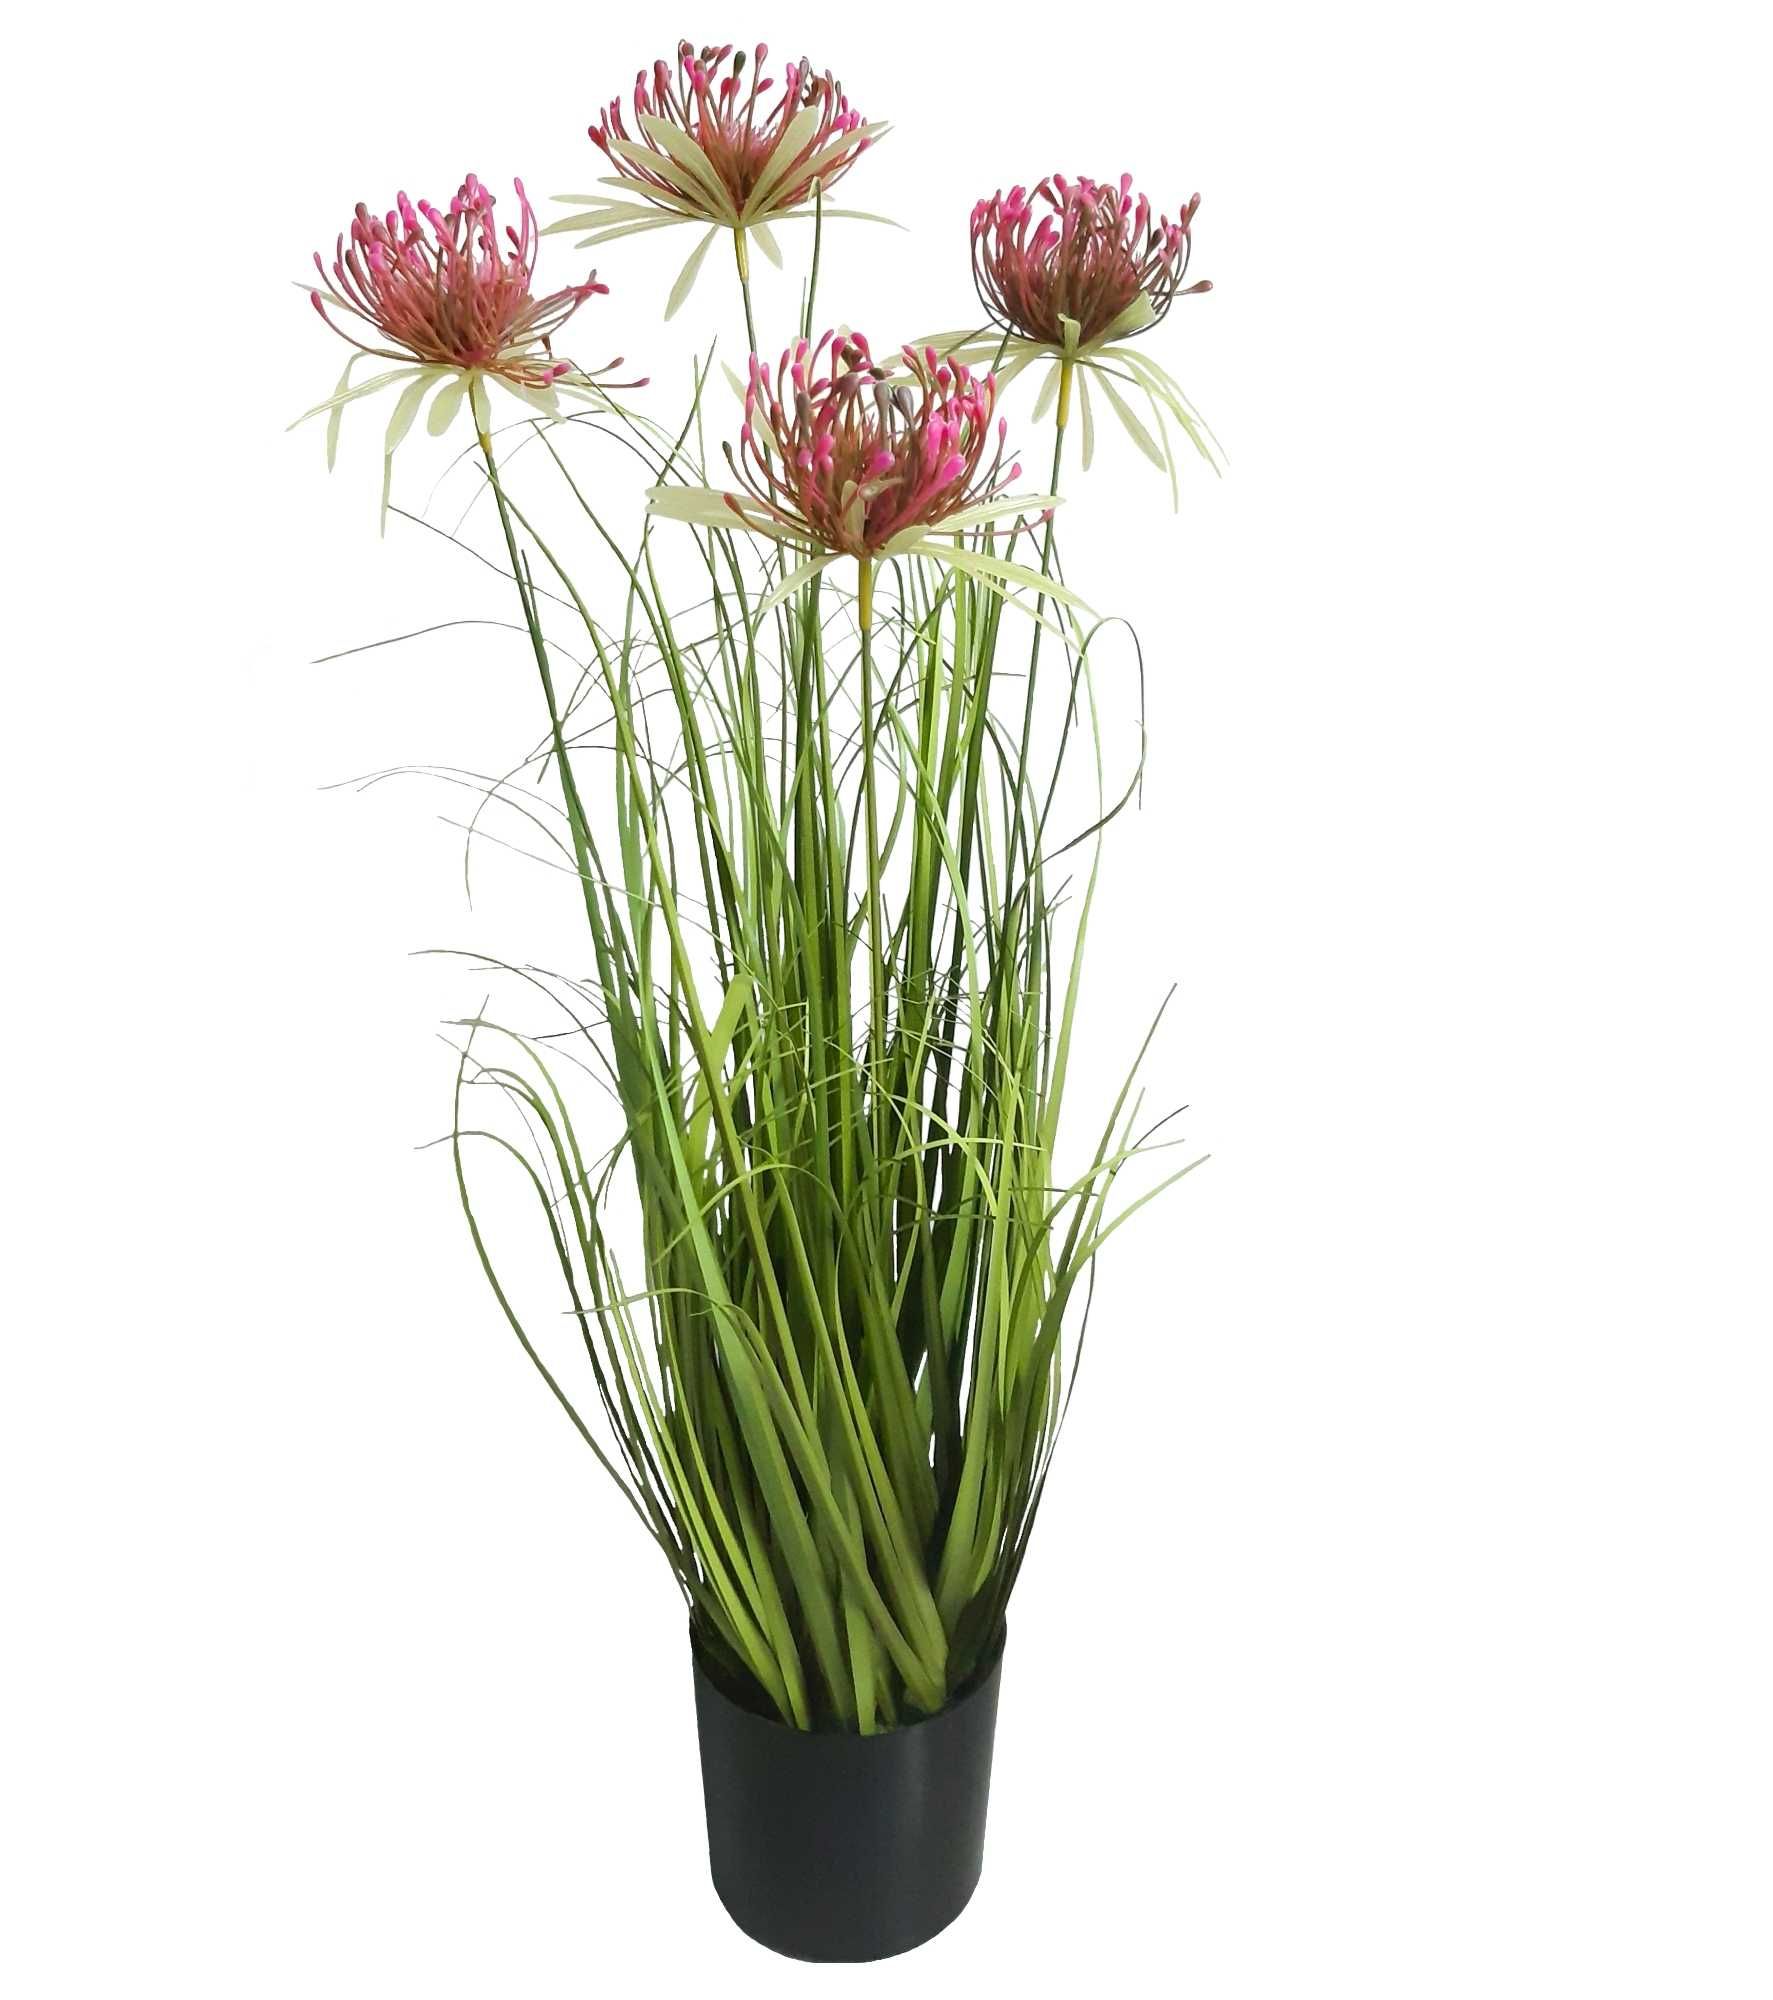 Sztuczna trawa w doniczce z różowymi kwiatami gęsta wysoka 70cm